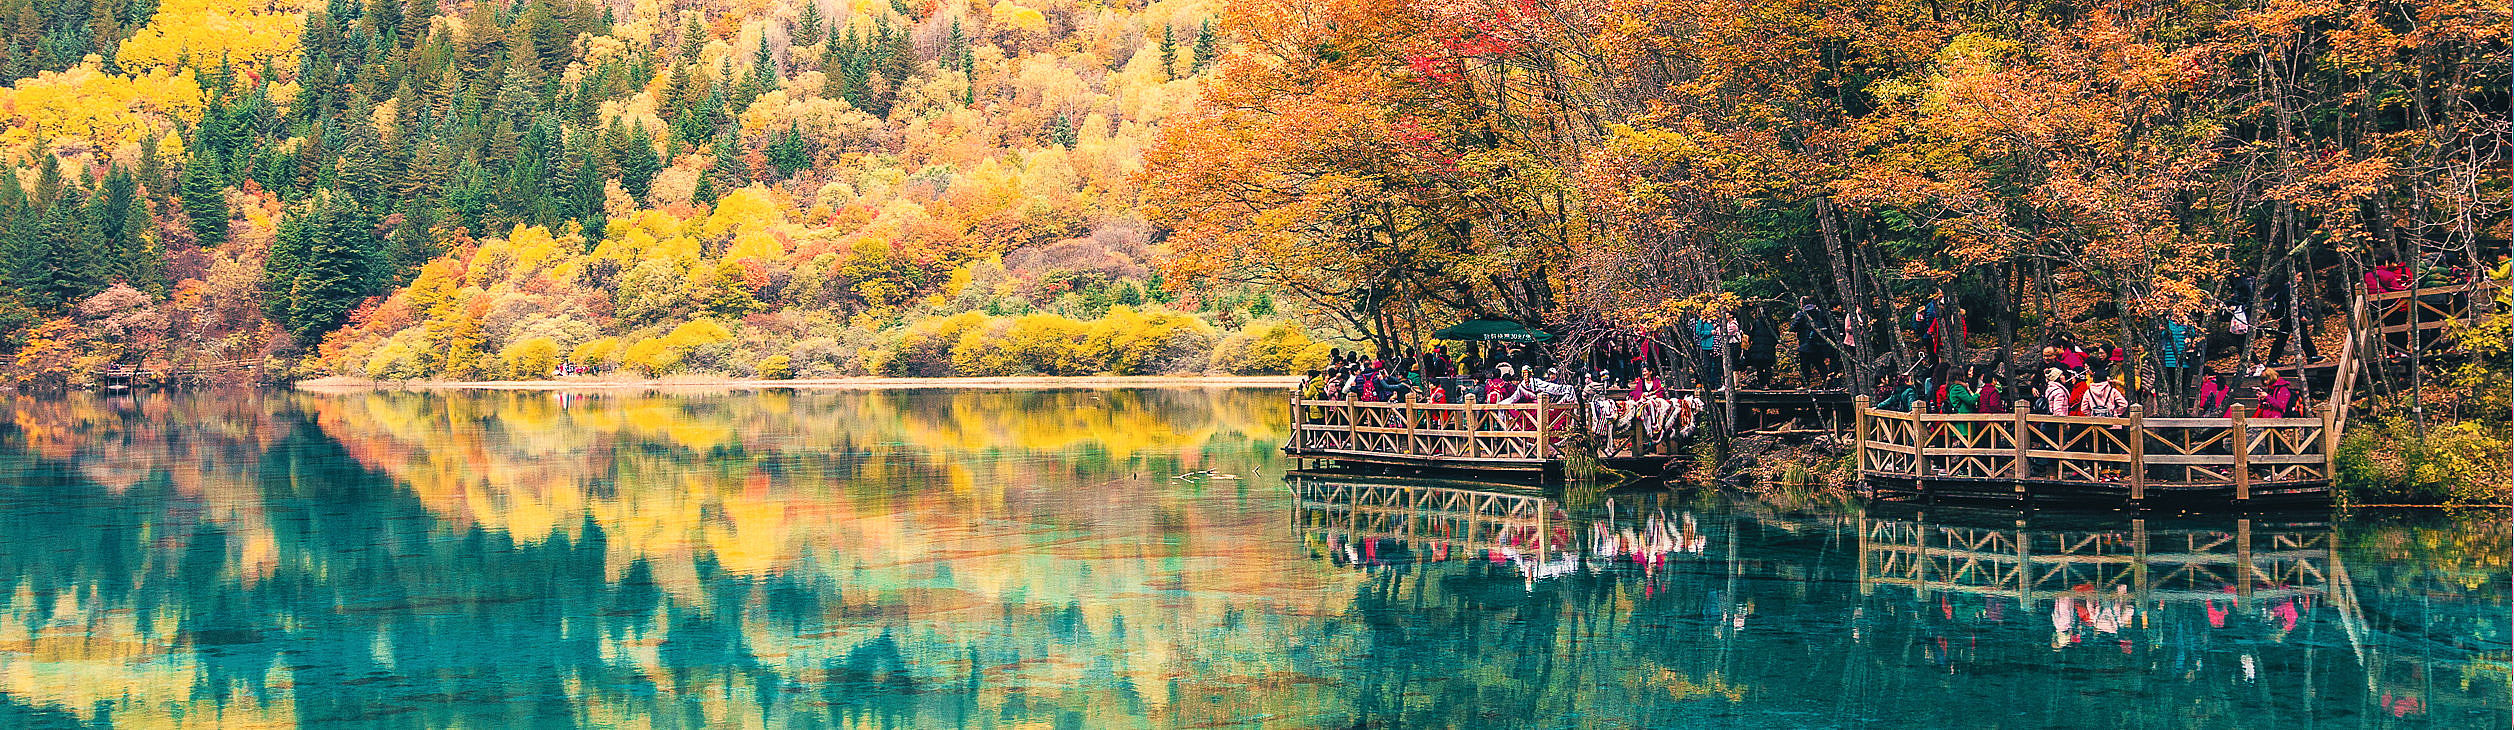 Viajes a China en otoño